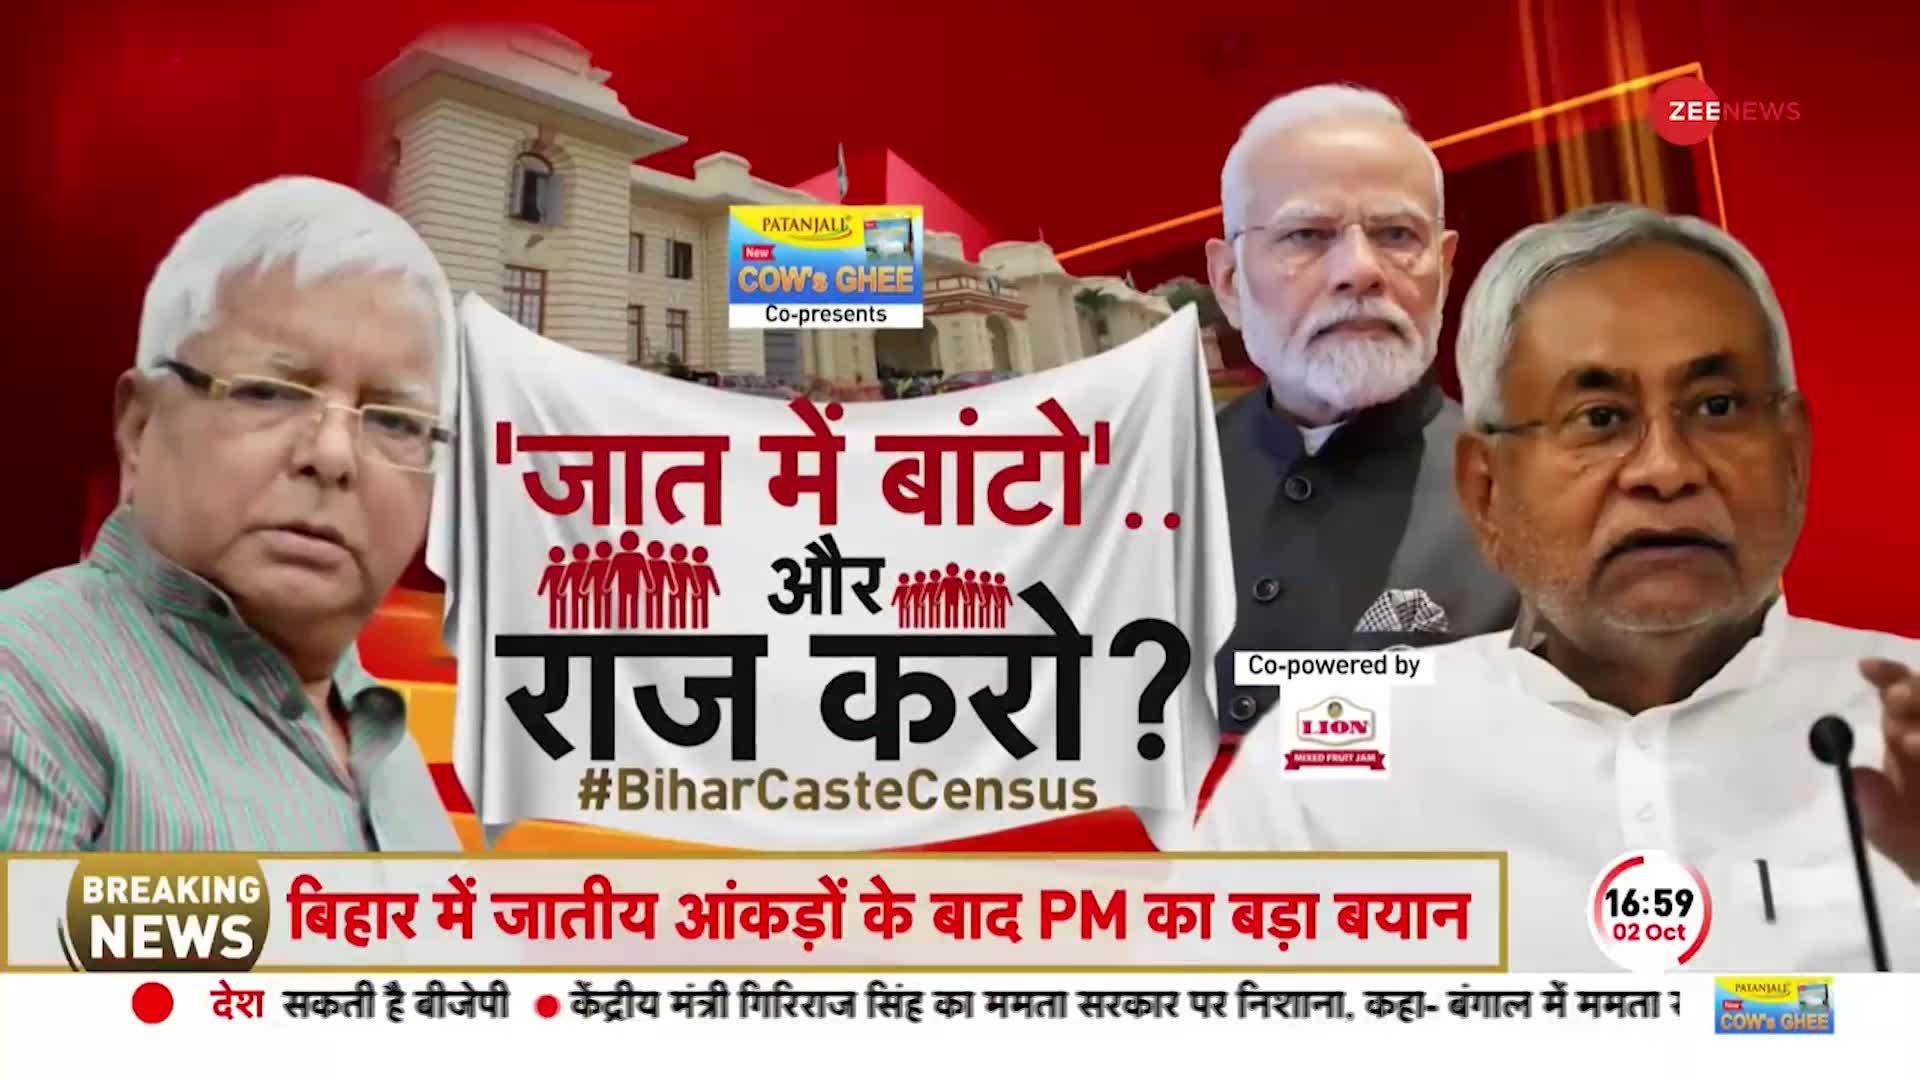 Bihar Caste Census: बिहार में जाति है की जाती नहीं ! जातीय जनगणना के आगे क्या?